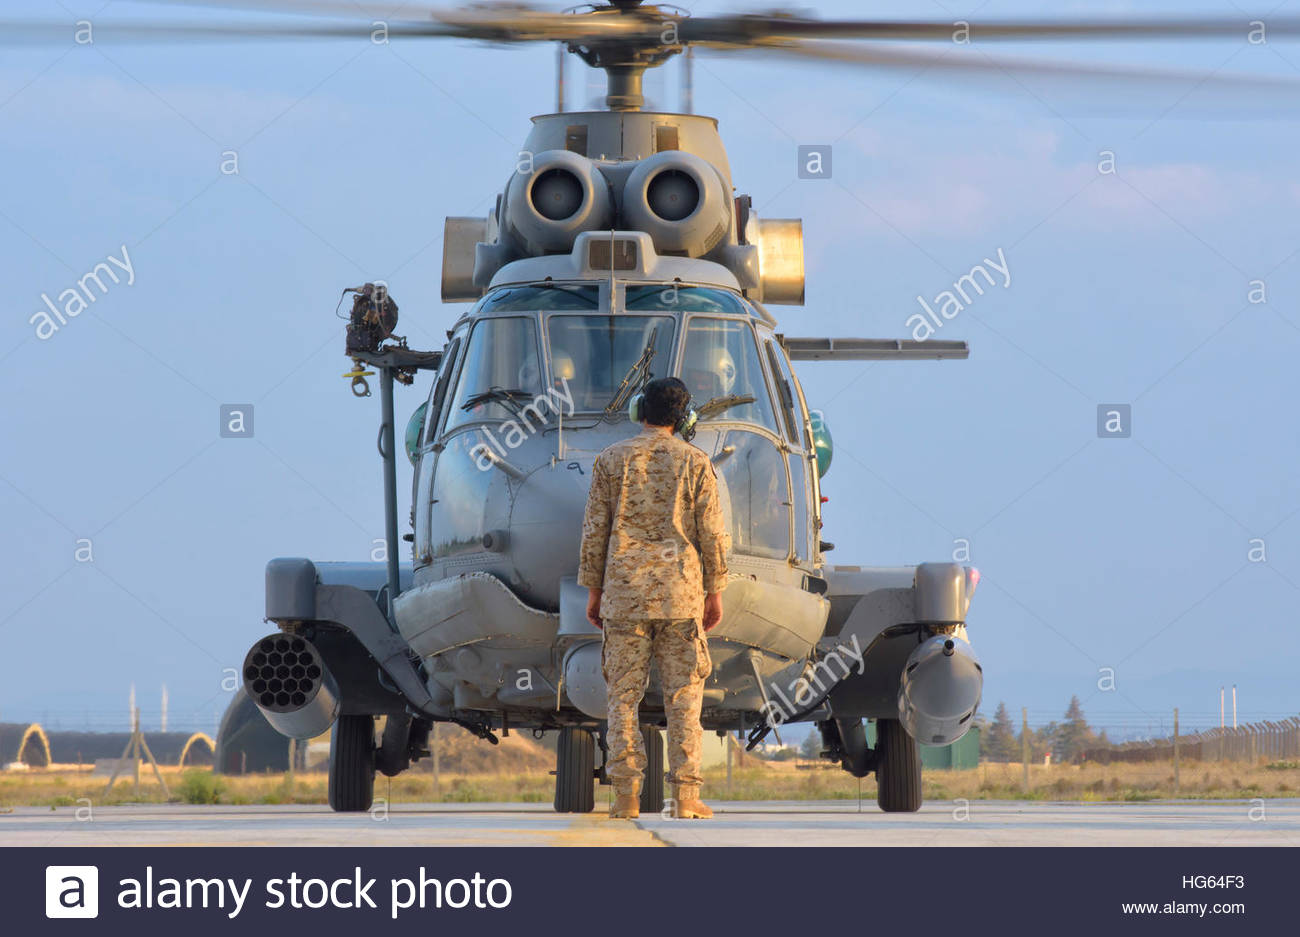 royal-saudi-air-force-as532-cougar-csar-helicopter-HG64F3.jpg